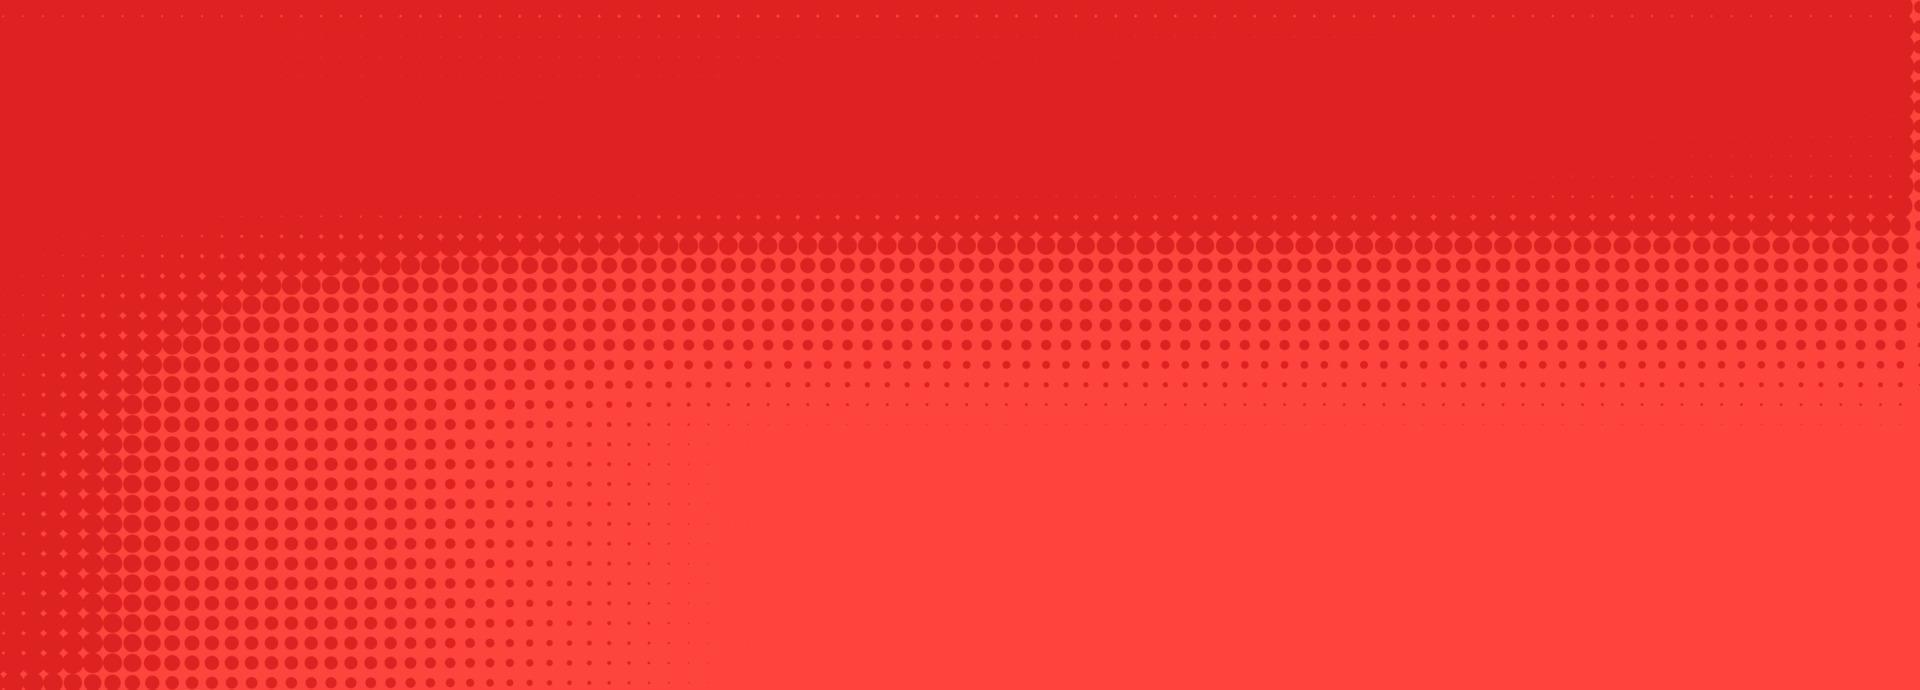 demi-teinte dans un style abstrait. texture vectorielle de bannière rétro géométrique. impression moderne. fond rouge. effet de lumière vecteur